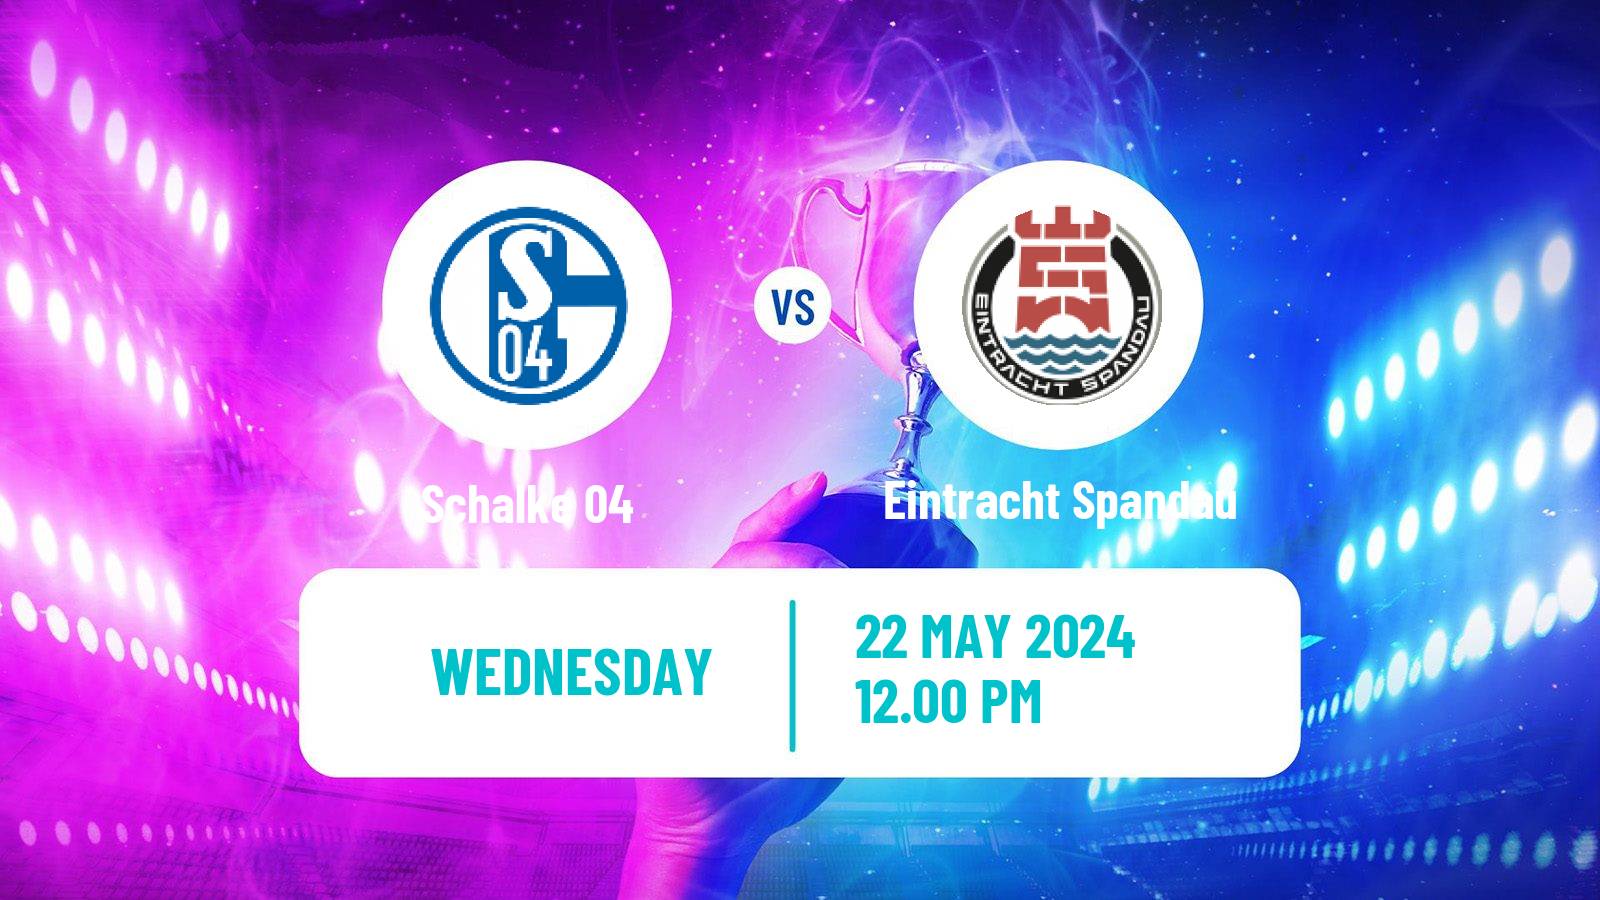 Esports League Of Legends Prime League Schalke 04 - Eintracht Spandau